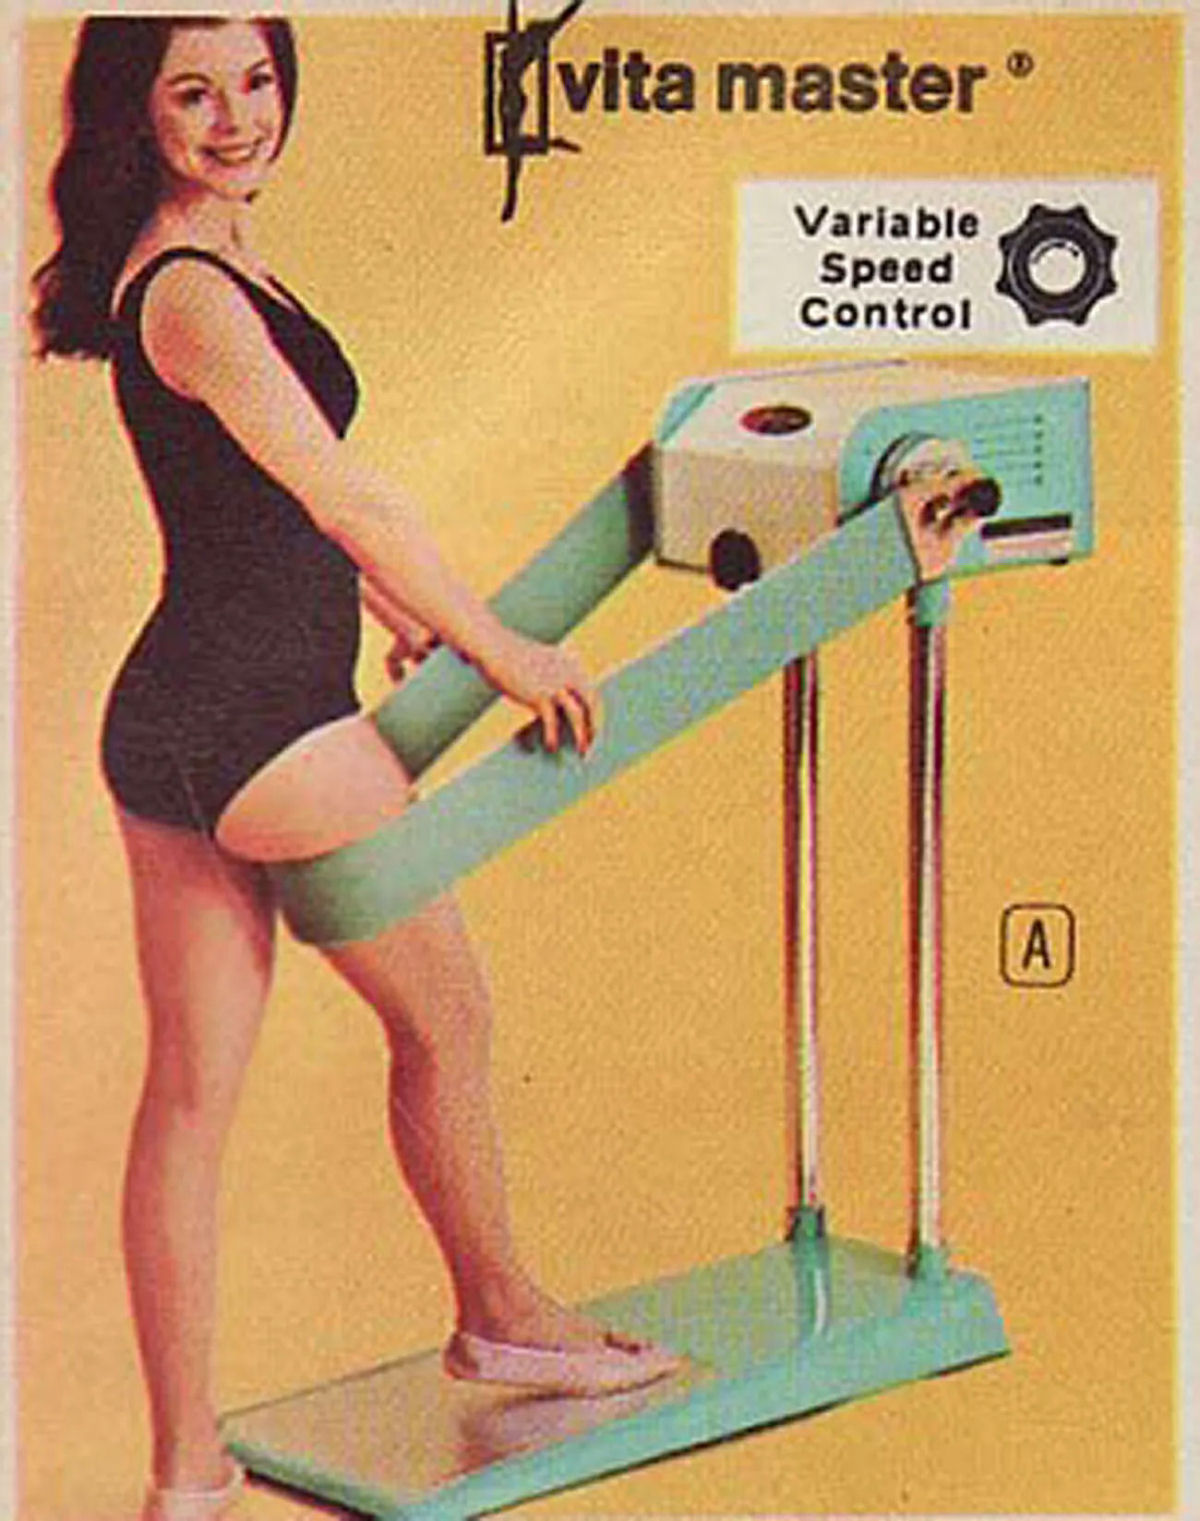 Fotos de máquinas de exercícios bizarras do passado 15